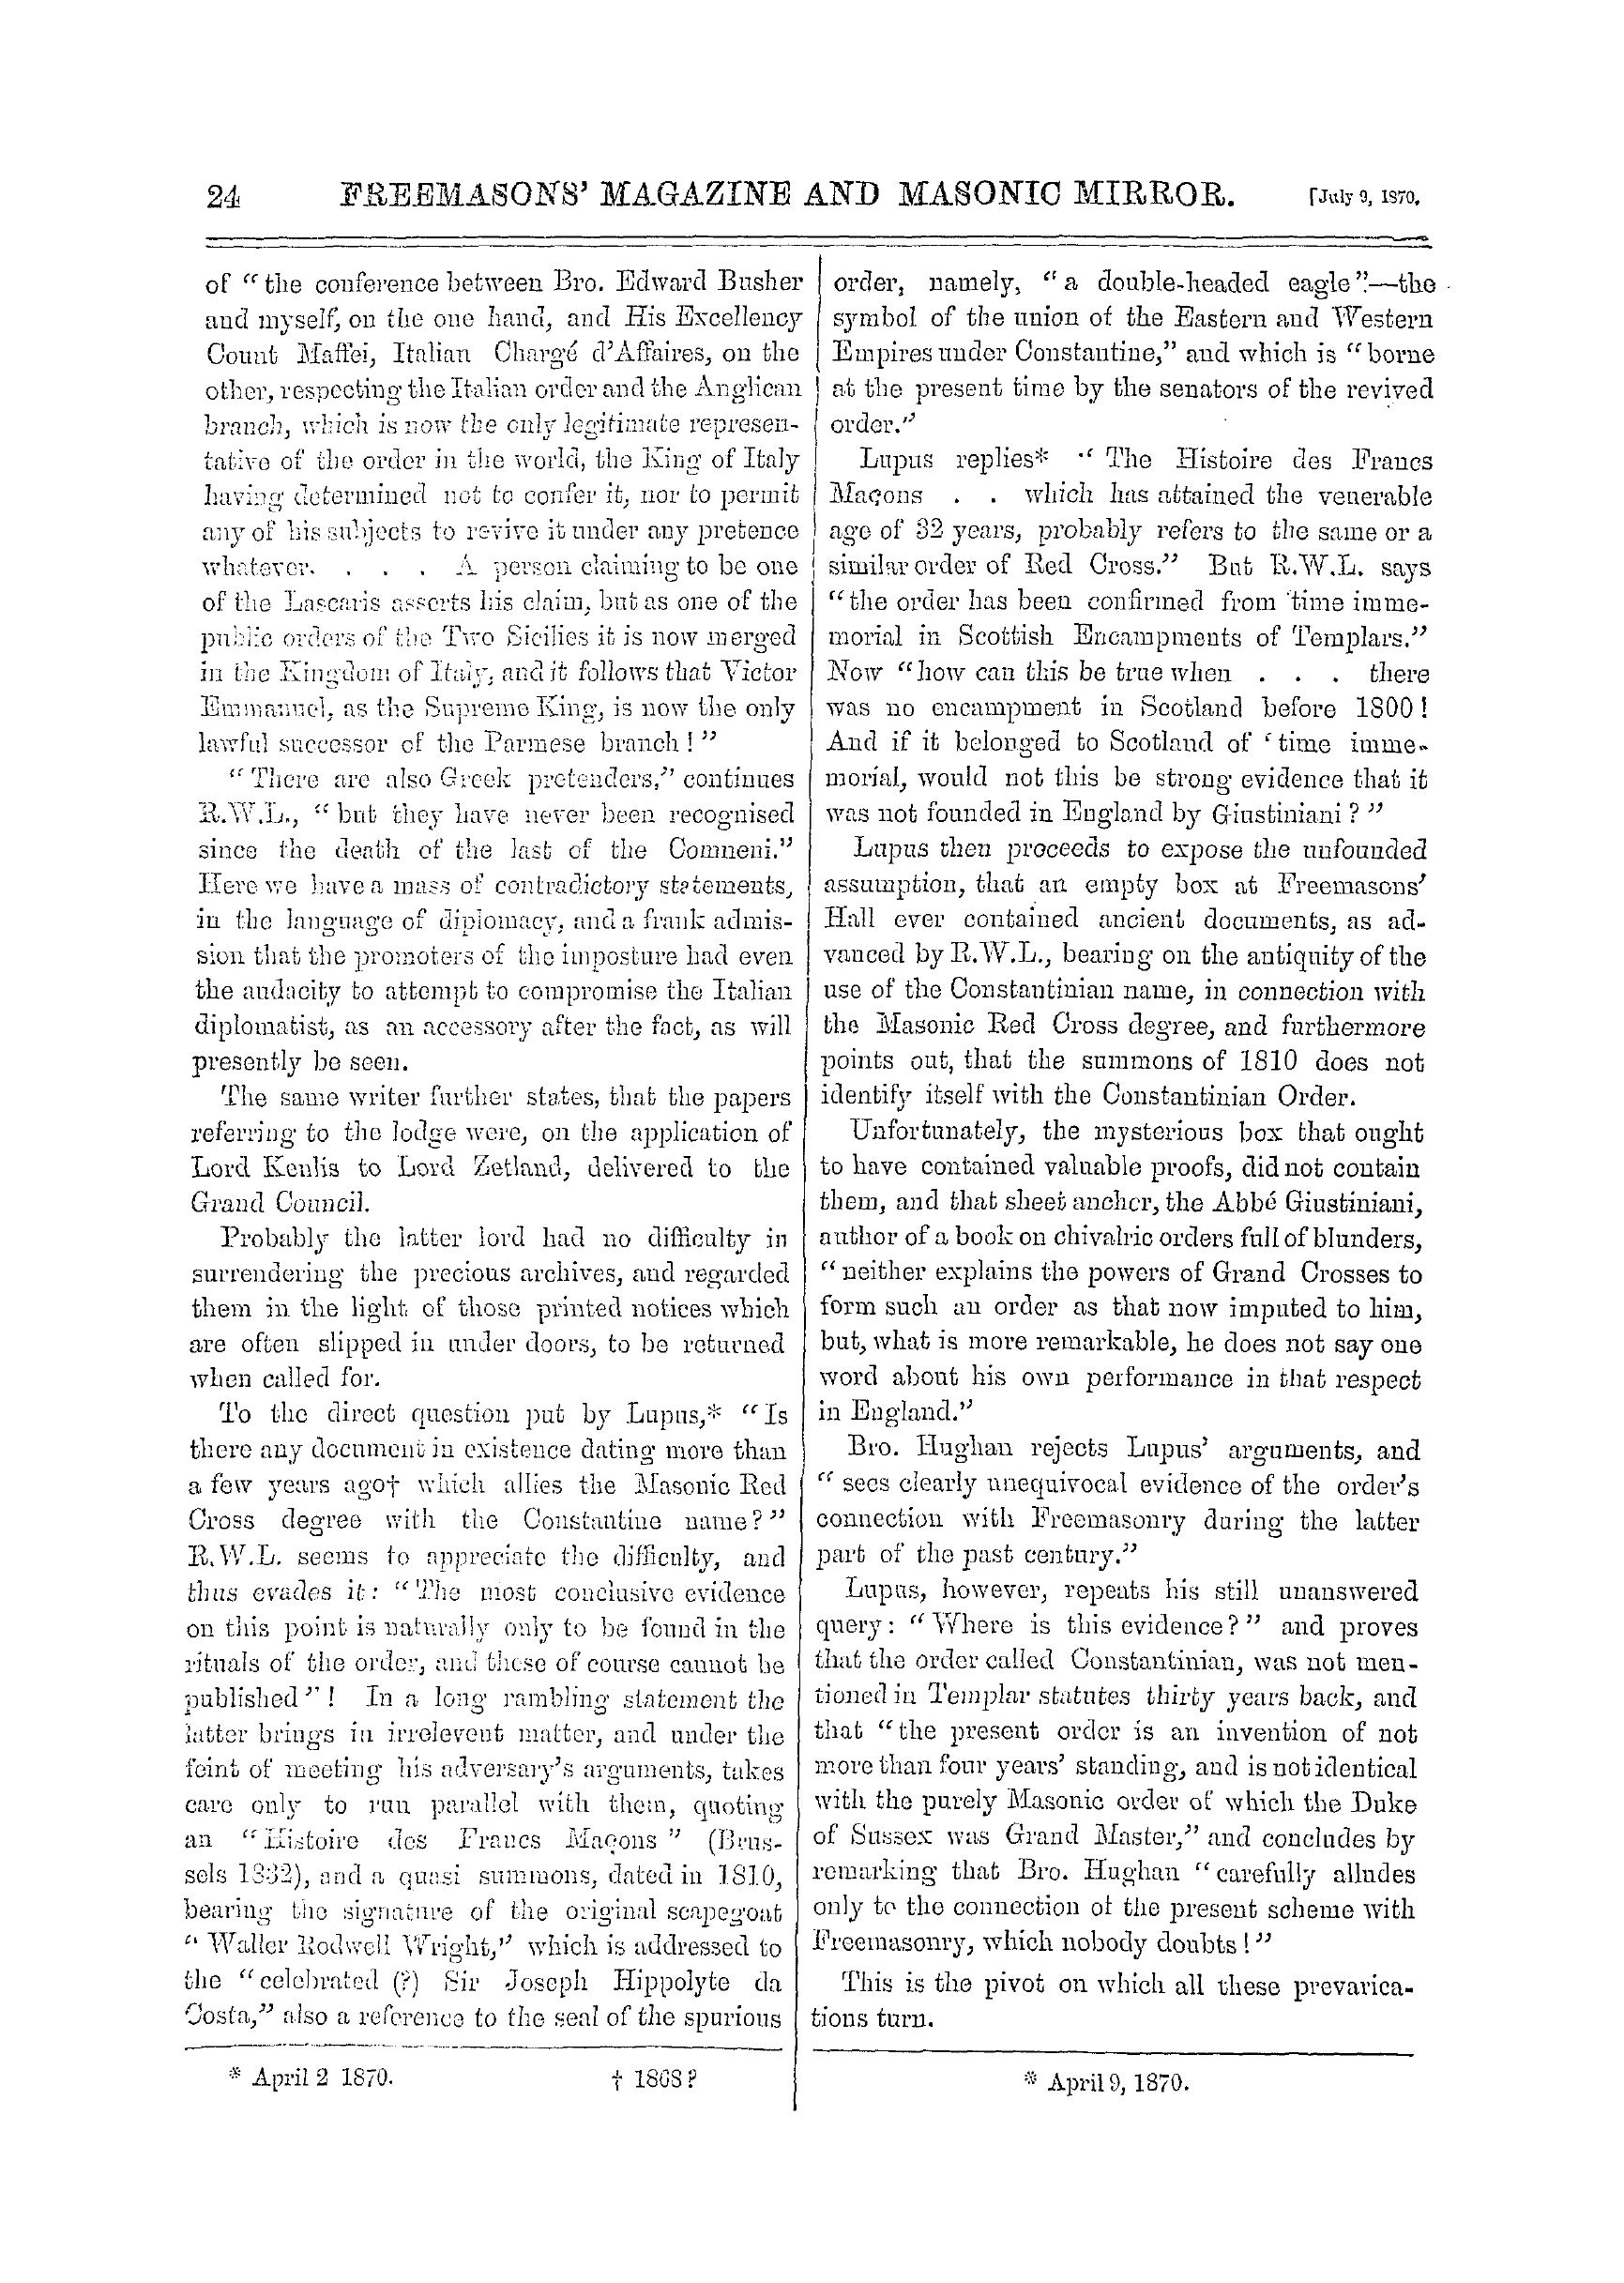 The Freemasons' Monthly Magazine: 1870-07-09: 4